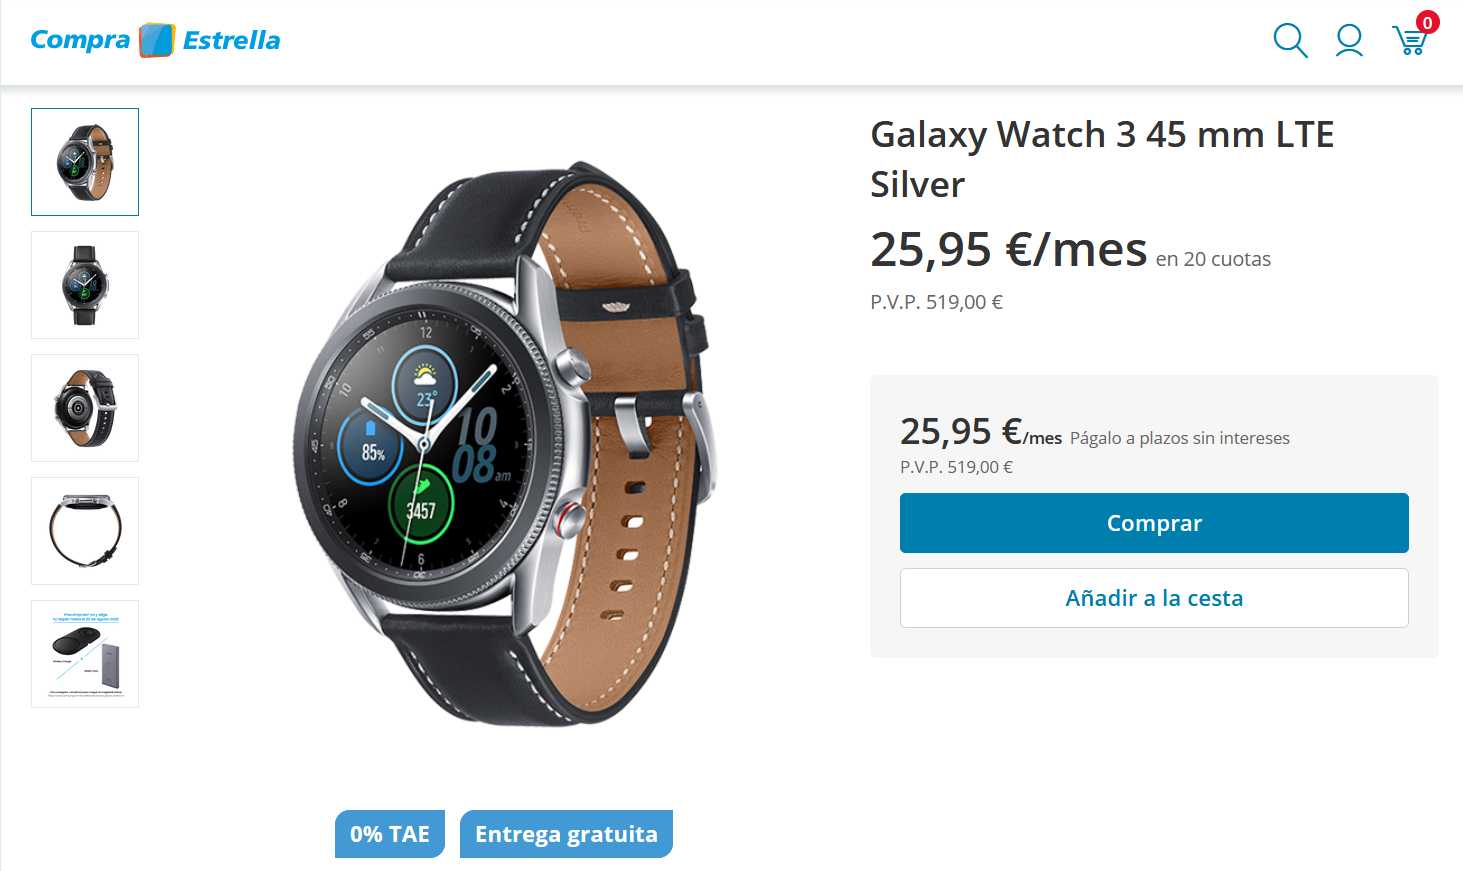 Посол компании Samsung и Tous – Паула Эчеваррией поделились с поклонниками умных часов Galaxy Watch новыми сведениями относительно обновленной линейки Оказывается